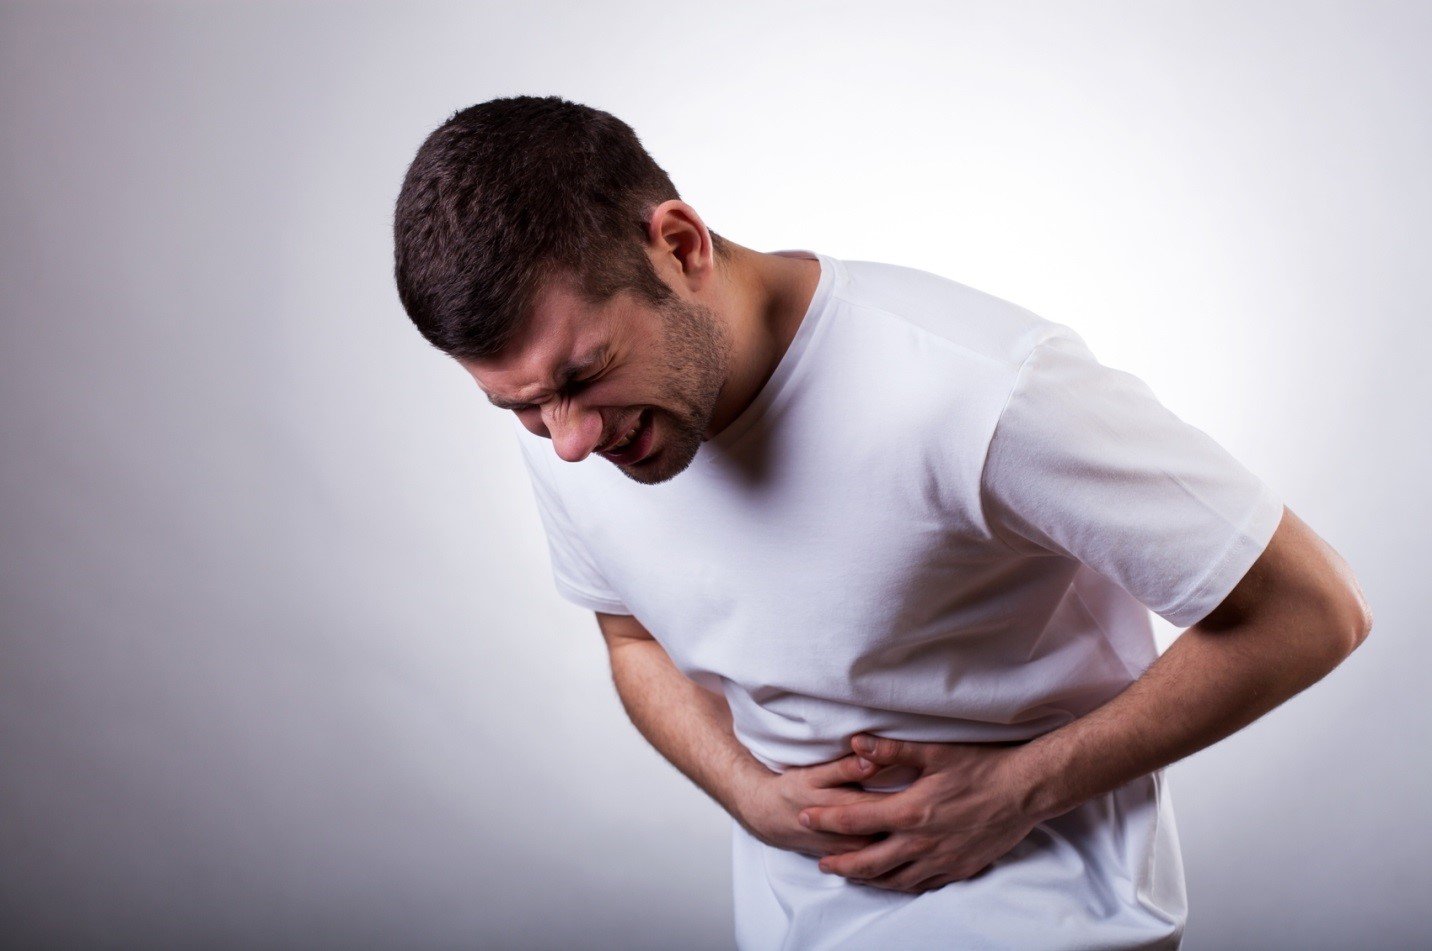 Khi nào thì nên gặp bác sĩ nếu có đau bụng vùng rốn sau khi ăn?